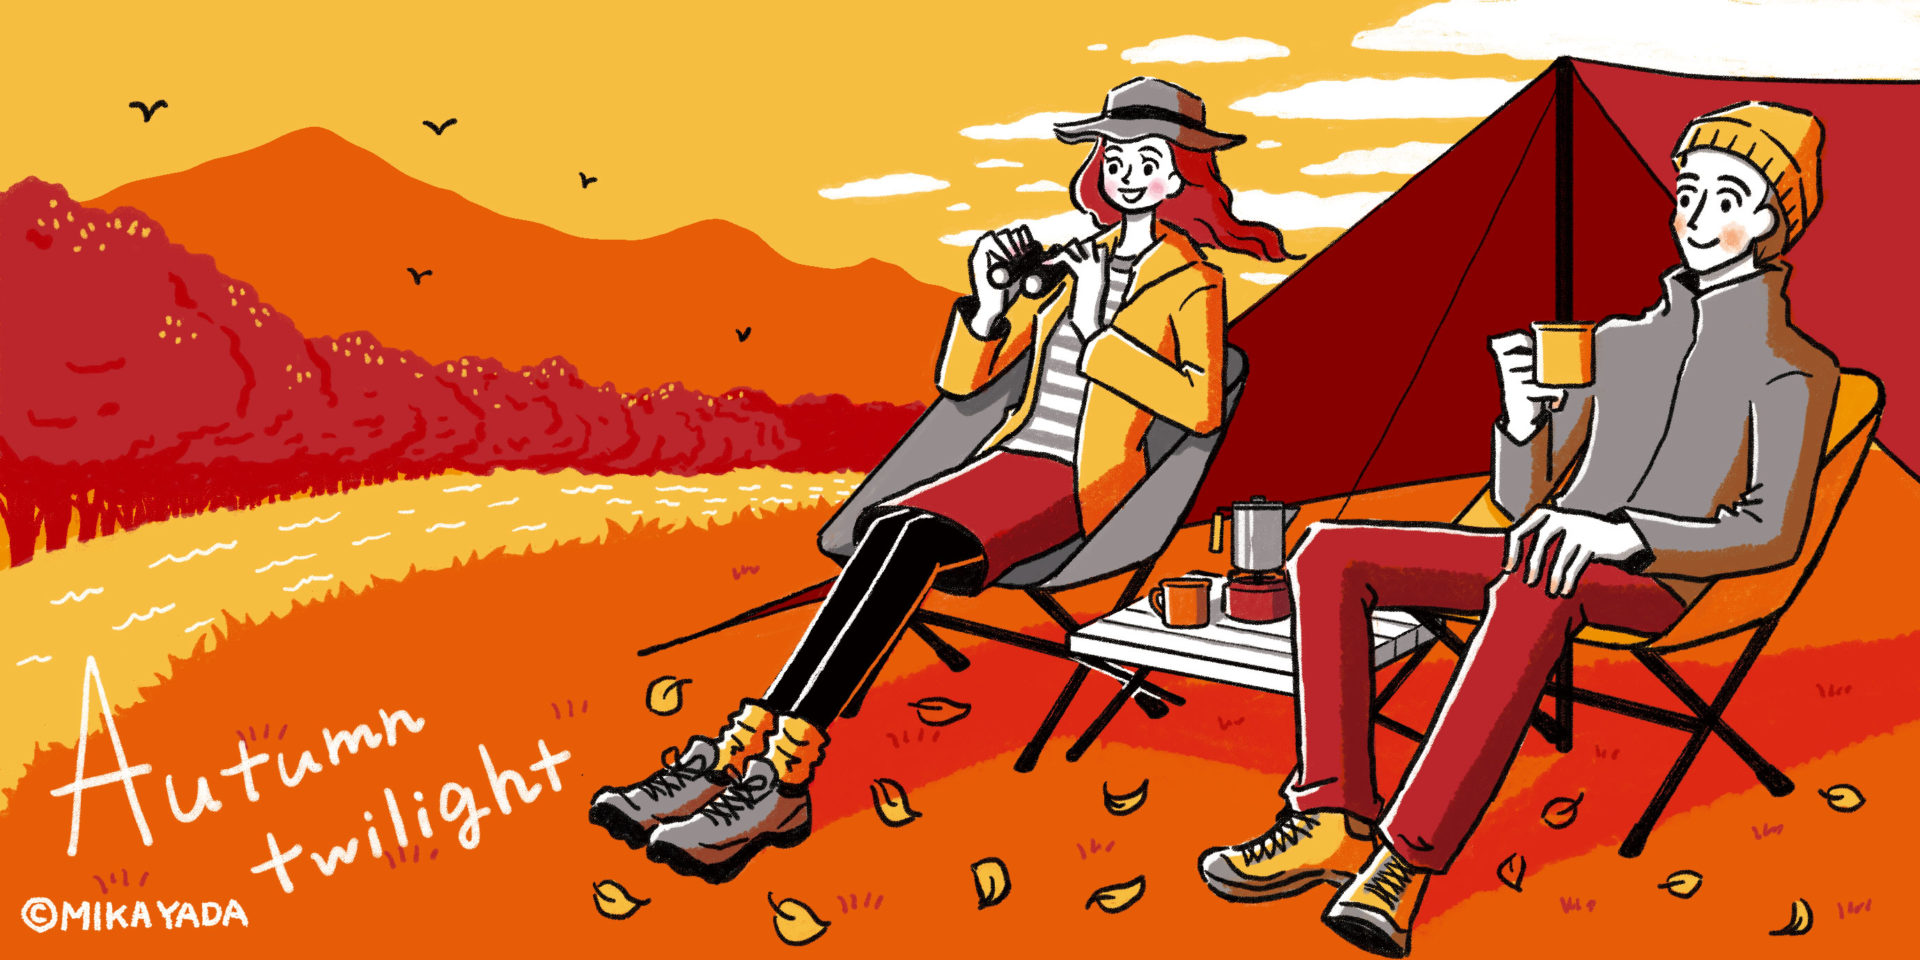 Autumn twilight　秋の夕暮れのイラストイメージ。 秋の夕暮れ、キャンプをしている男女のカップルがお茶を飲みながら鳥観察をしているイメージ。